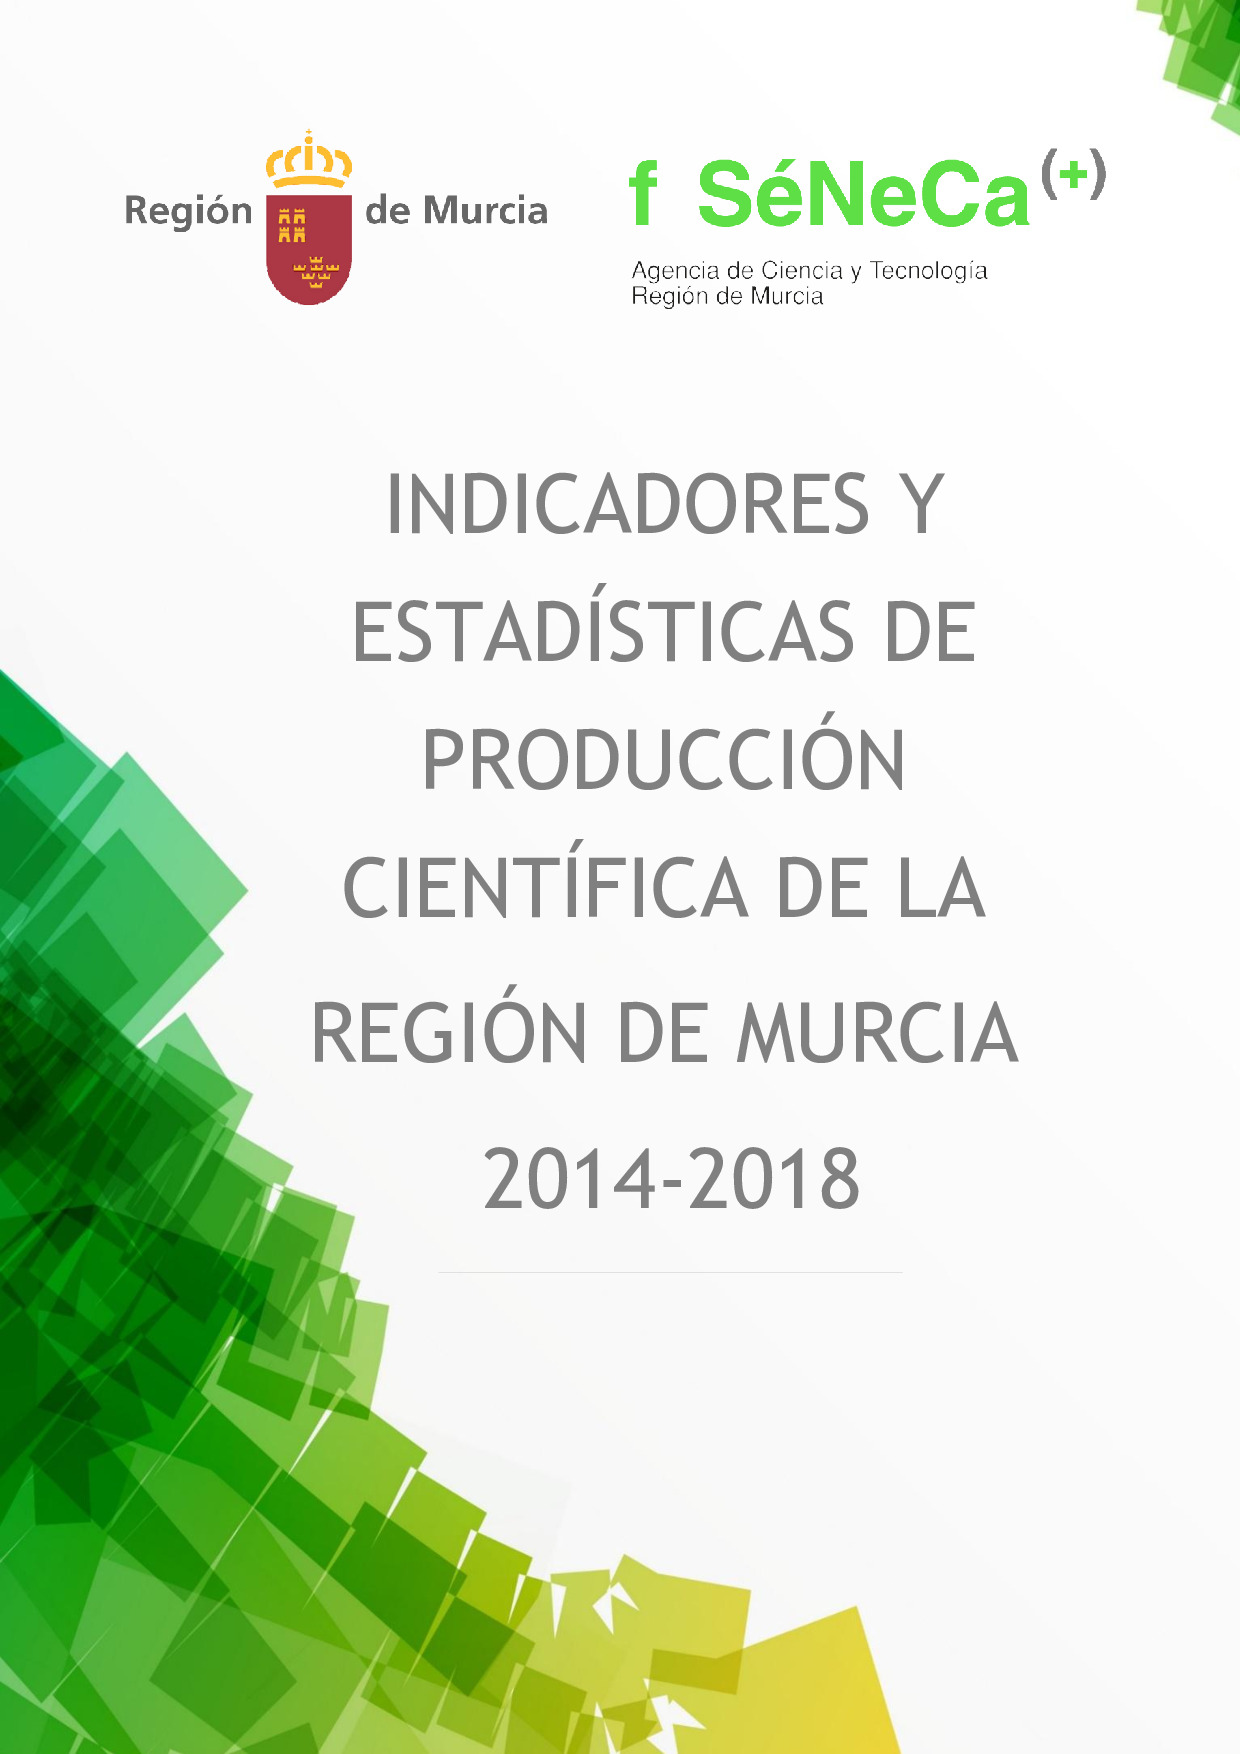 Indicadores de producción científica de la Región de Murcia 2014-2018